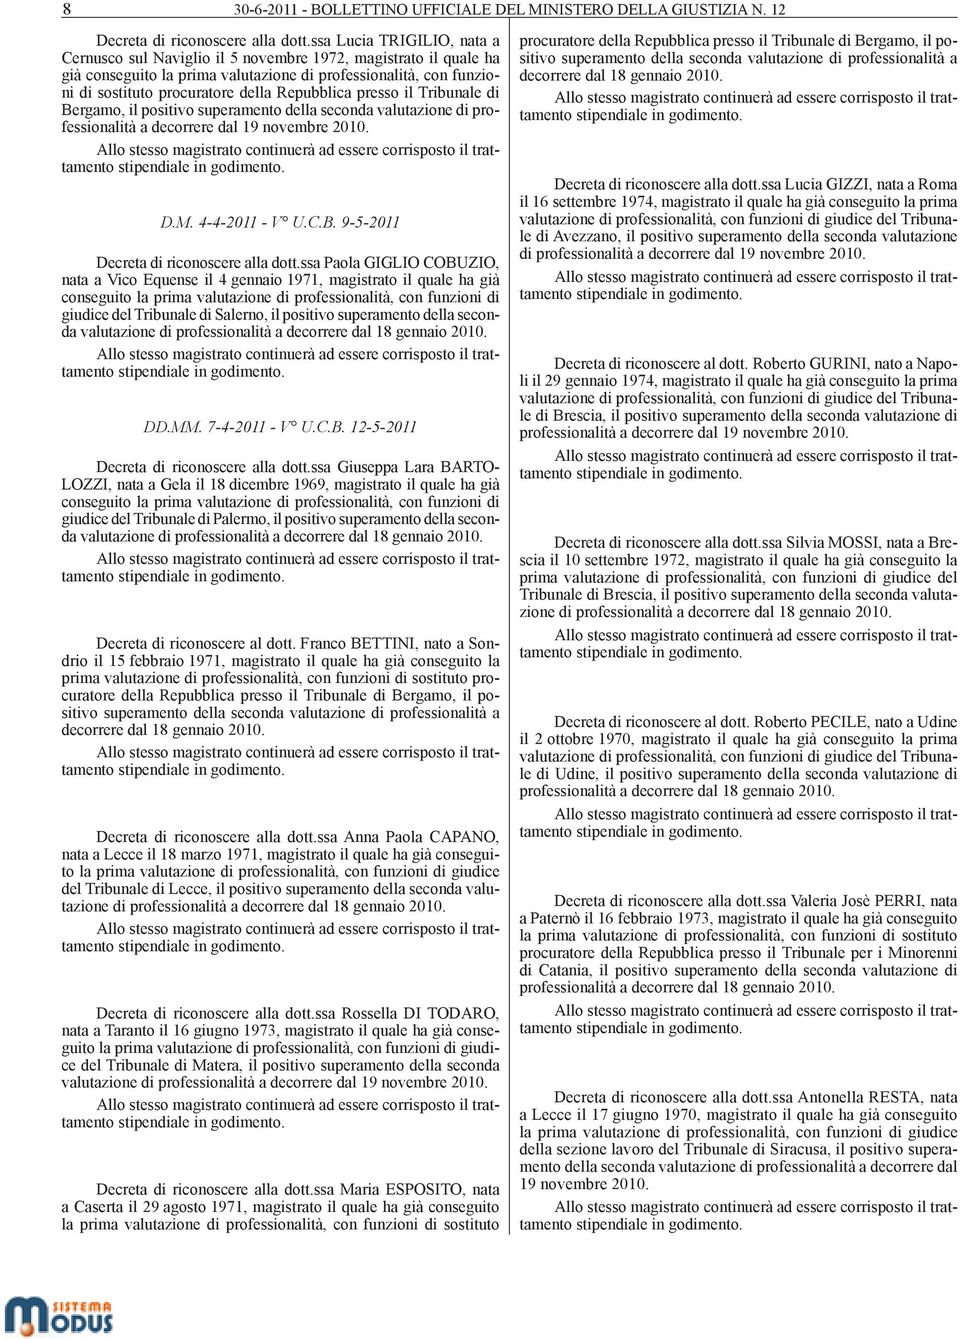 Repubblica presso il Tribunale di Bergamo, il positivo superamento della seconda valutazione di professionalità a decorrere dal 19 novembre 2010. D.M. 4-4-2011 - V U.C.B. 9-5-2011 Decreta di riconoscere alla dott.